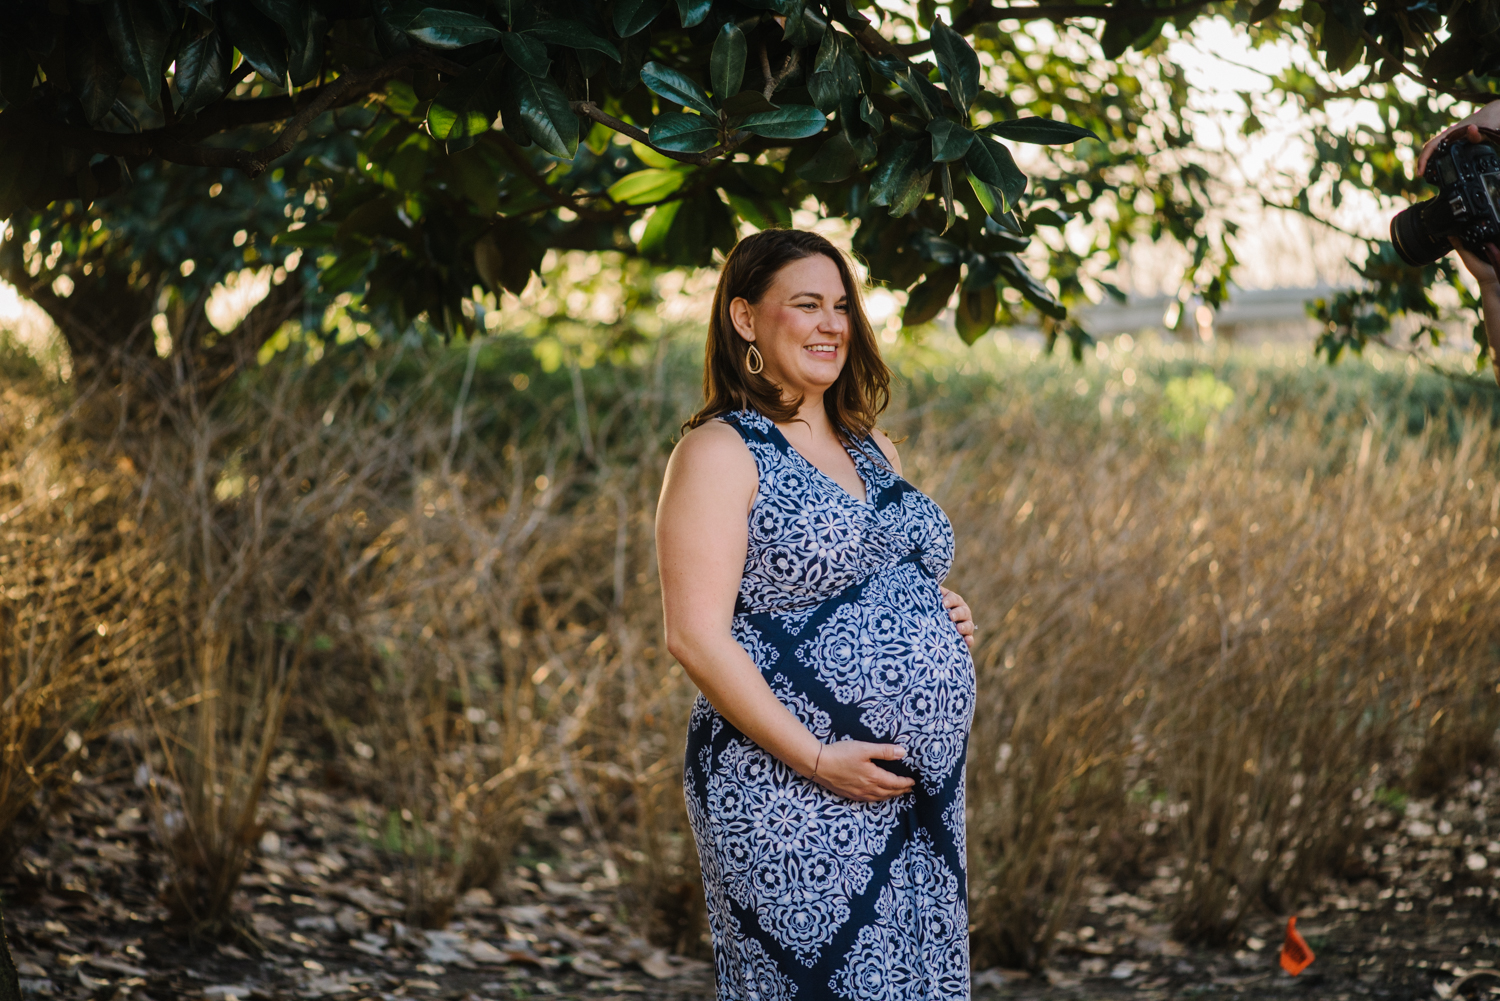 Jana-maternitysession-houstonmoms-houstonphotographer-texasphotographer-6.jpg